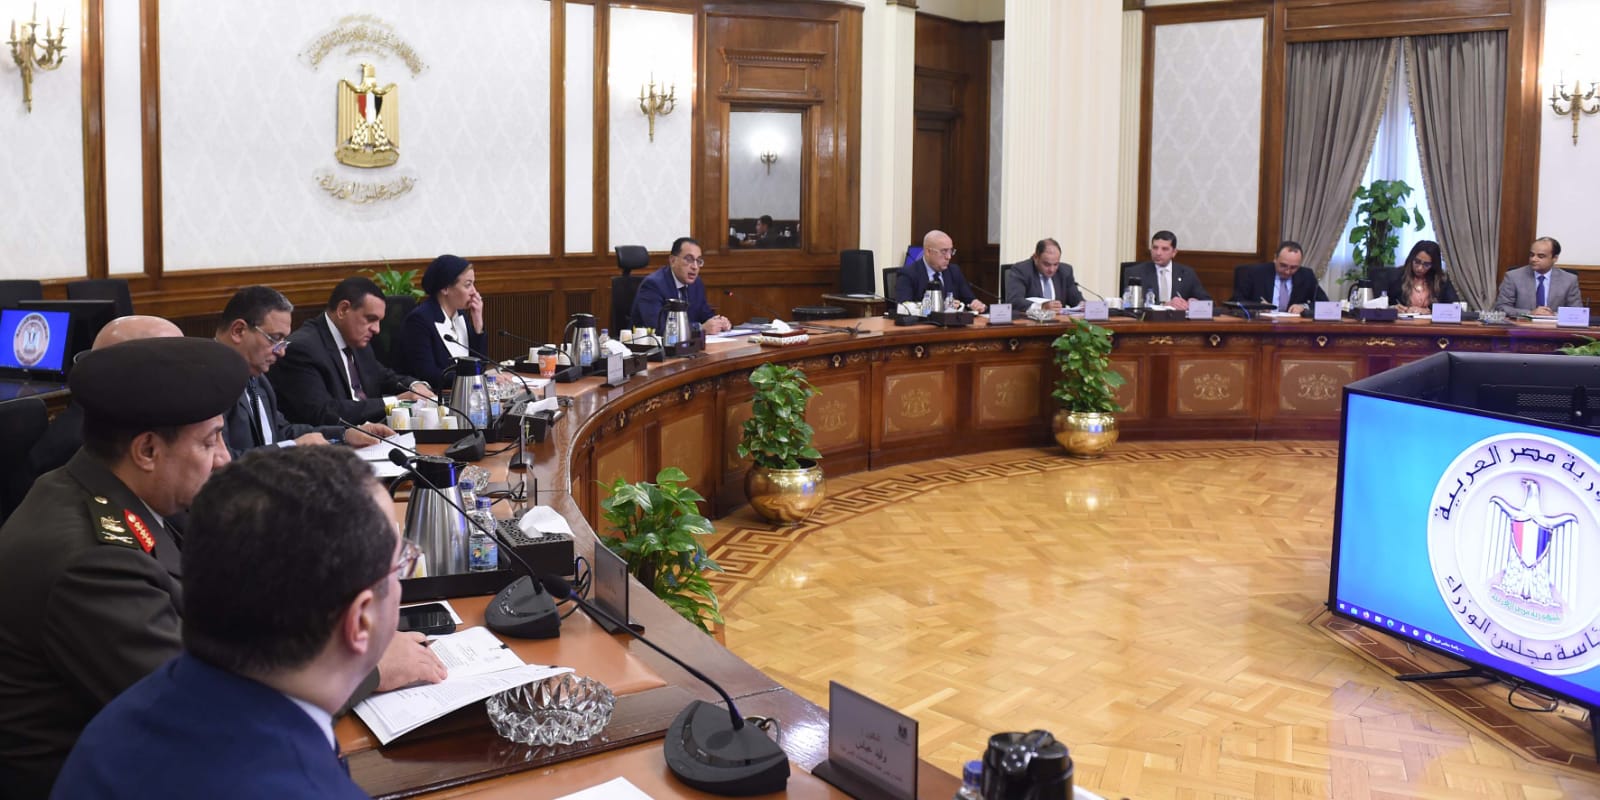 اللجنة العليا لمنح موافقات  الرخصة الذهبية  توافق على  مشروعات تمهيدًا لعرضها على مجلس الوزراء